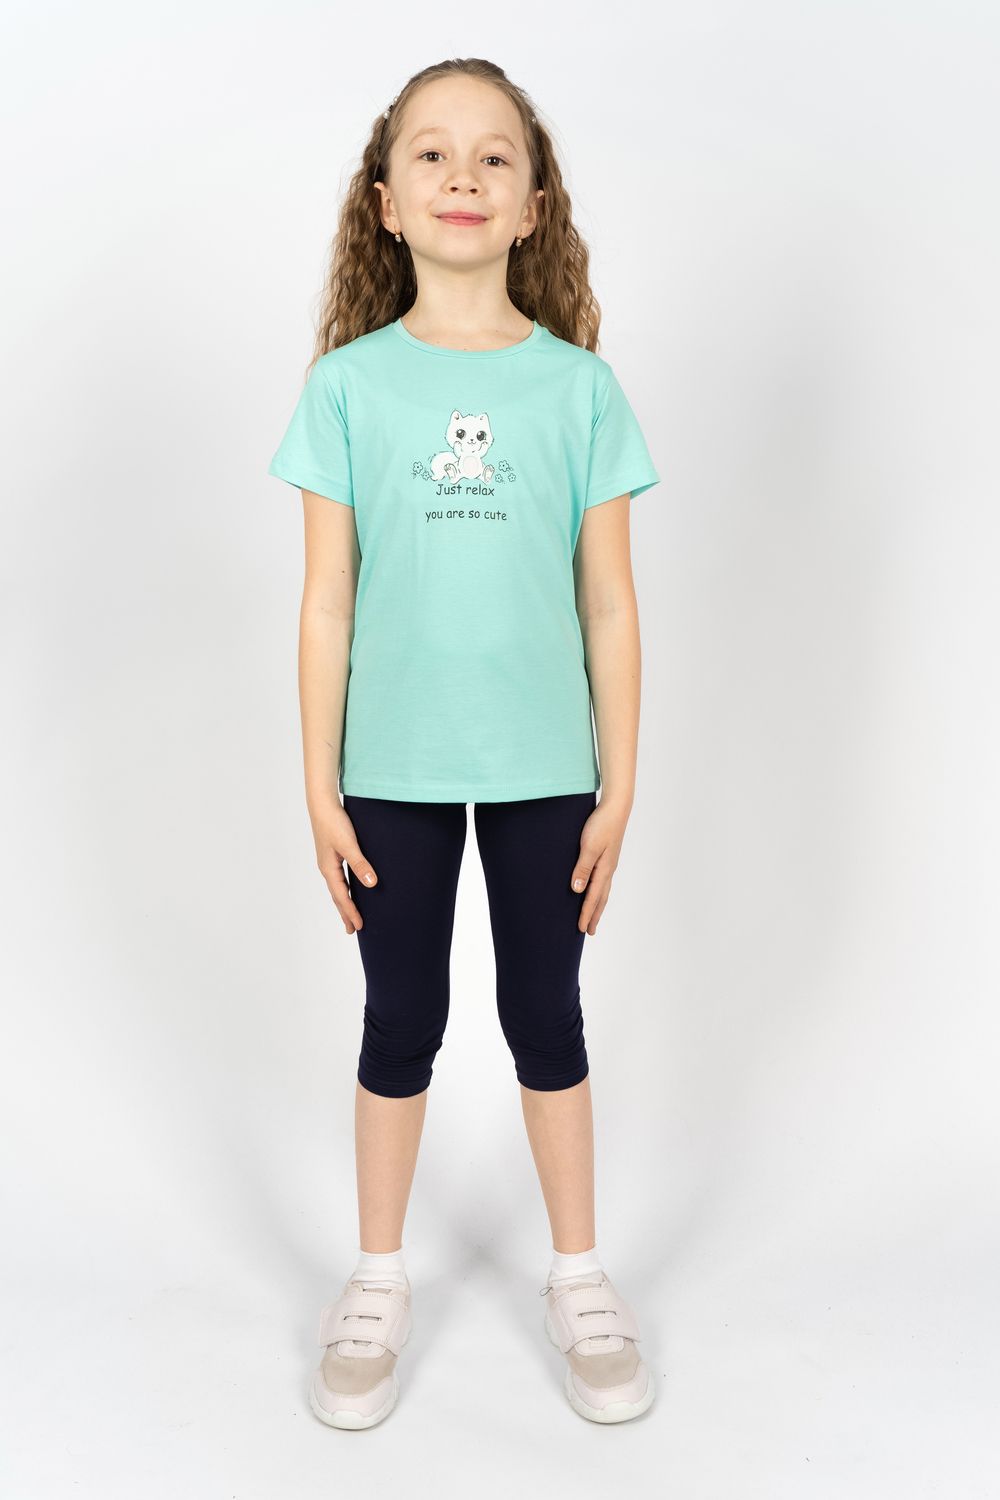 Комплект для девочки 41108 (футболка + бриджи) - мятный/т.синий